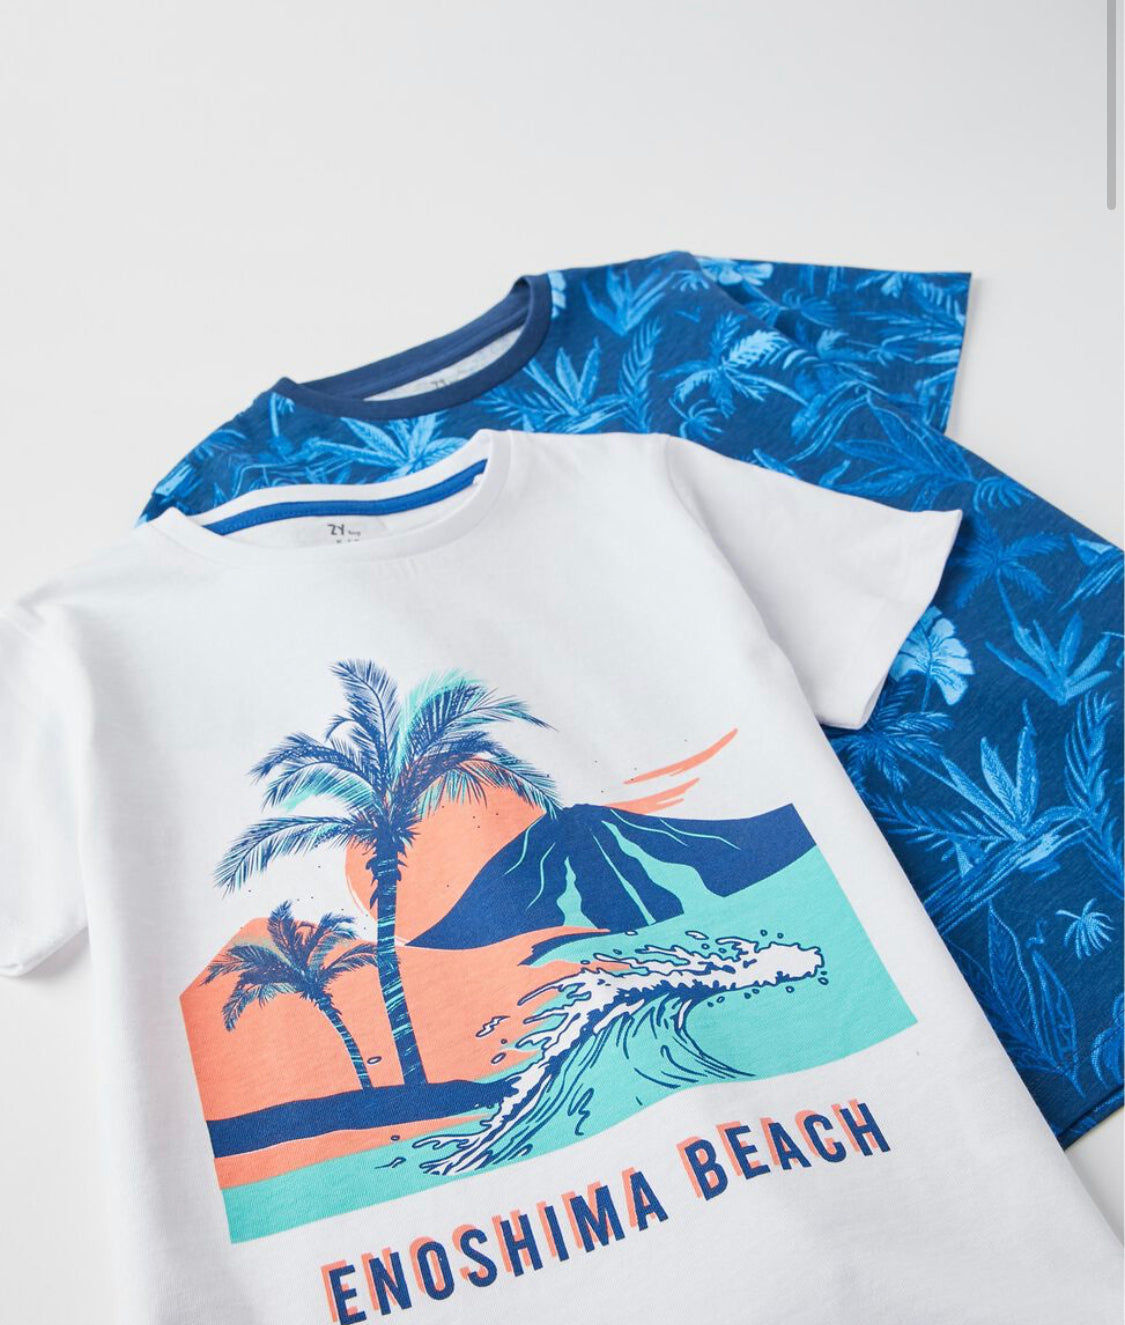 2 Camisetas Para Niño 'Enoshima Beach', Blanco/Azul lolimariscalmoda 12.99